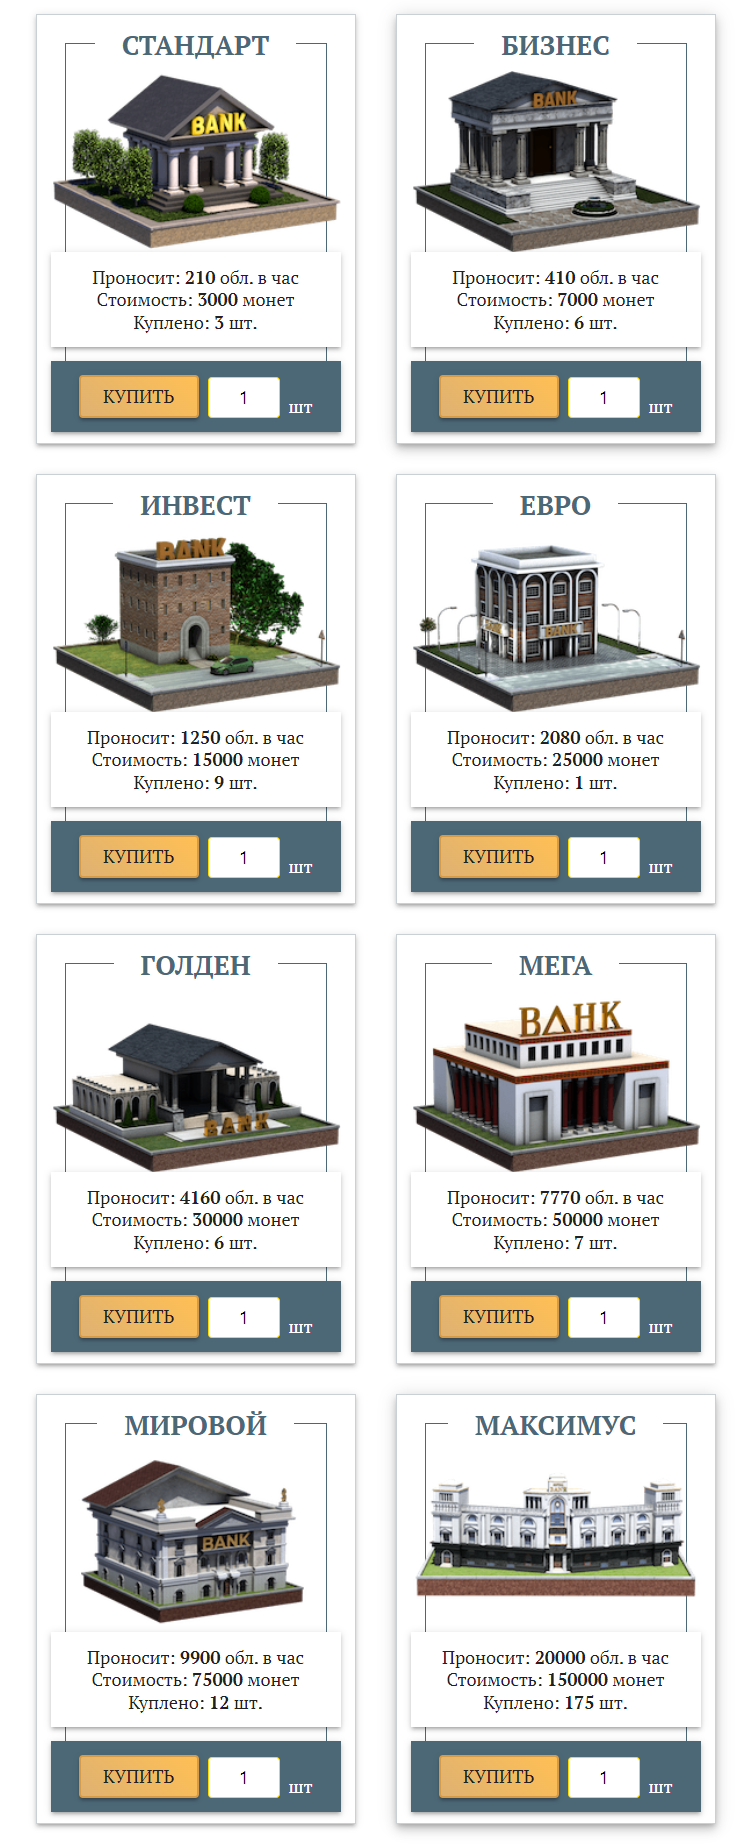 Money Banks - всегда выгодные инвестиции! - super.money-buildings.org обзор